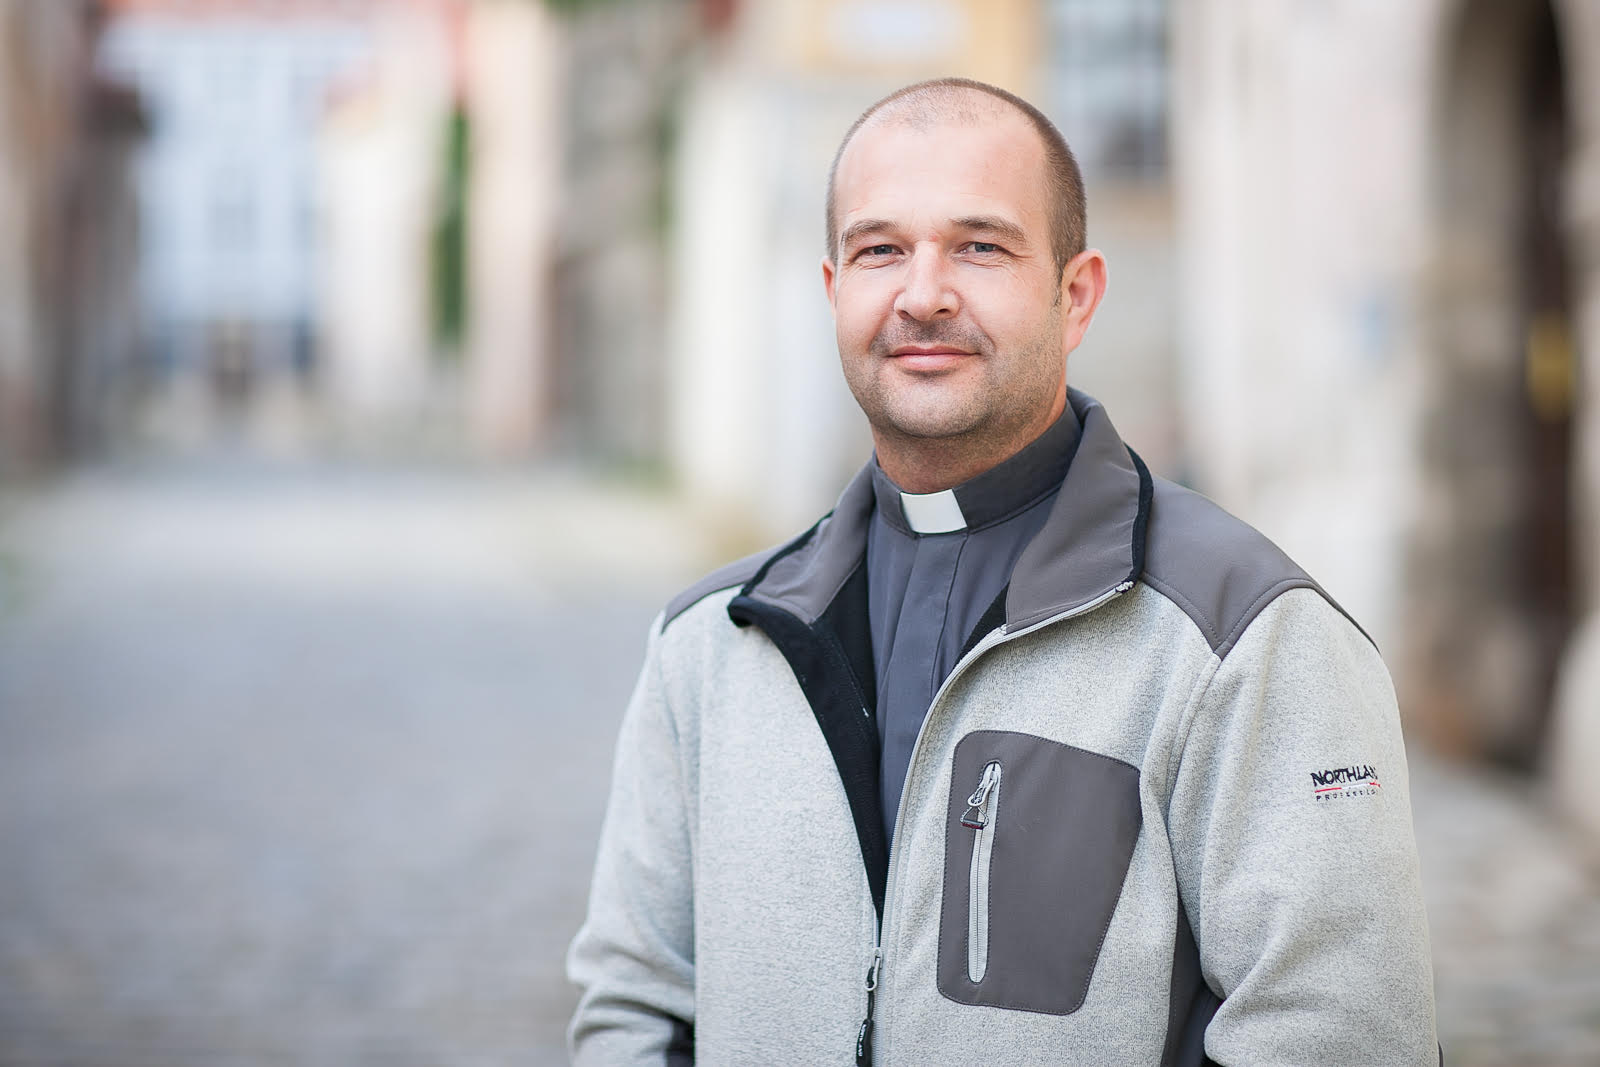 Kňaz Ján Buc: Hlboké spojenie s Bohom nás uschopňuje držať hlavu hore a kráčať dopredu